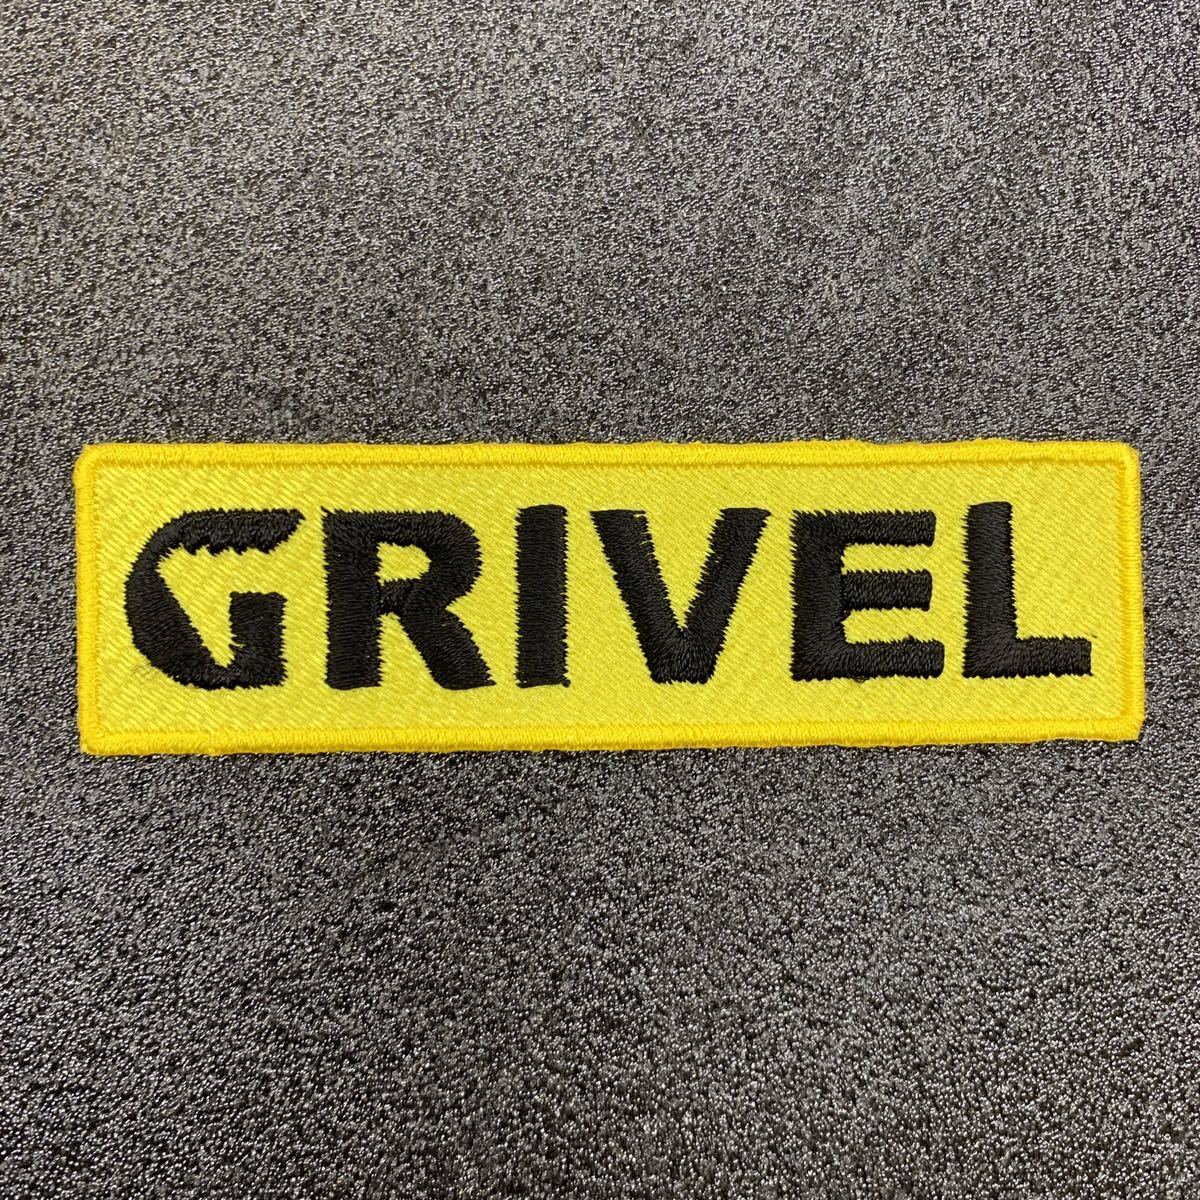 GRIVEL グリベル 文字ロゴ 黄 98×28mm アイロンワッペン - トレッキング 登山 ロック クライミング - sonntagpatches 定形郵便送料無料の画像2